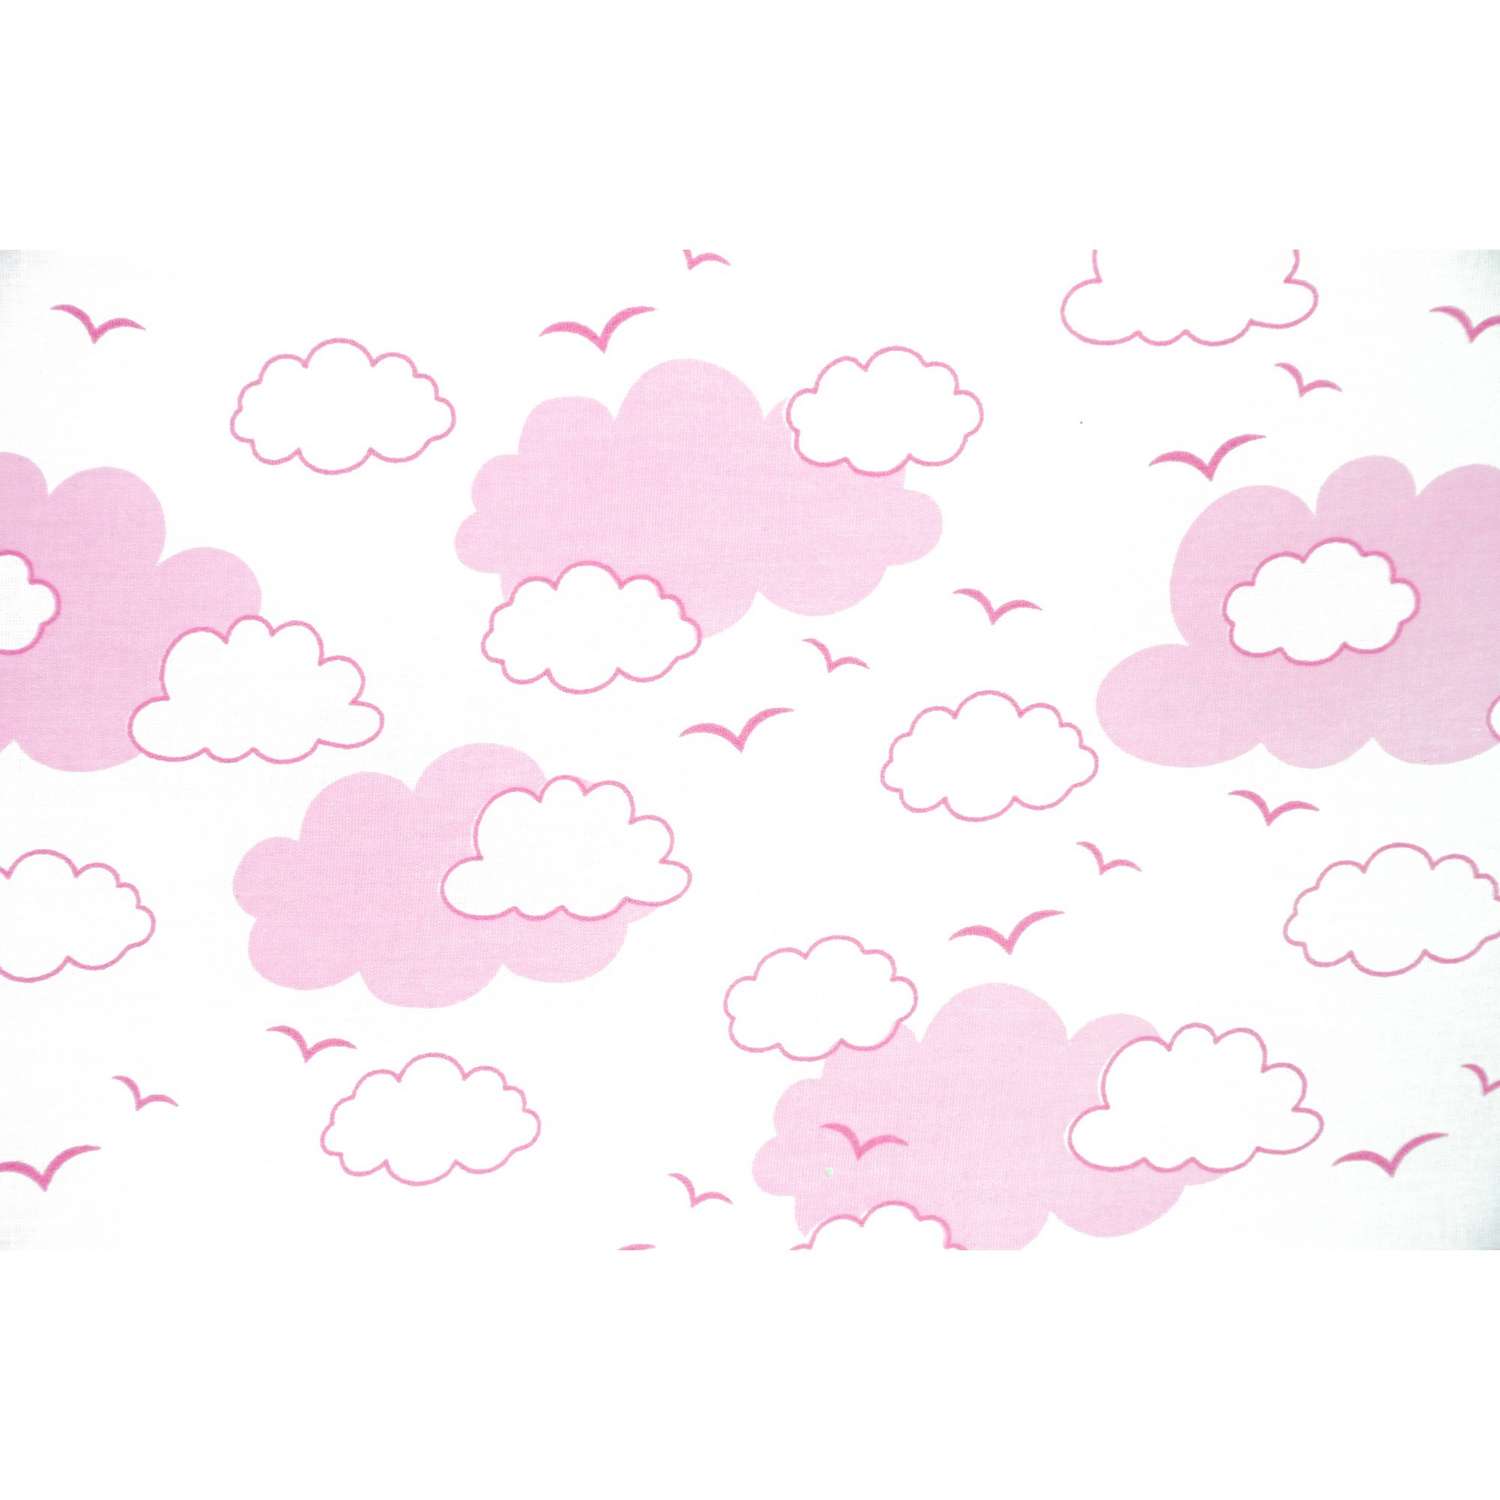 Комплект постельного белья Споки Ноки Облака Розовый 3предмета DMC111/6RO - фото 3